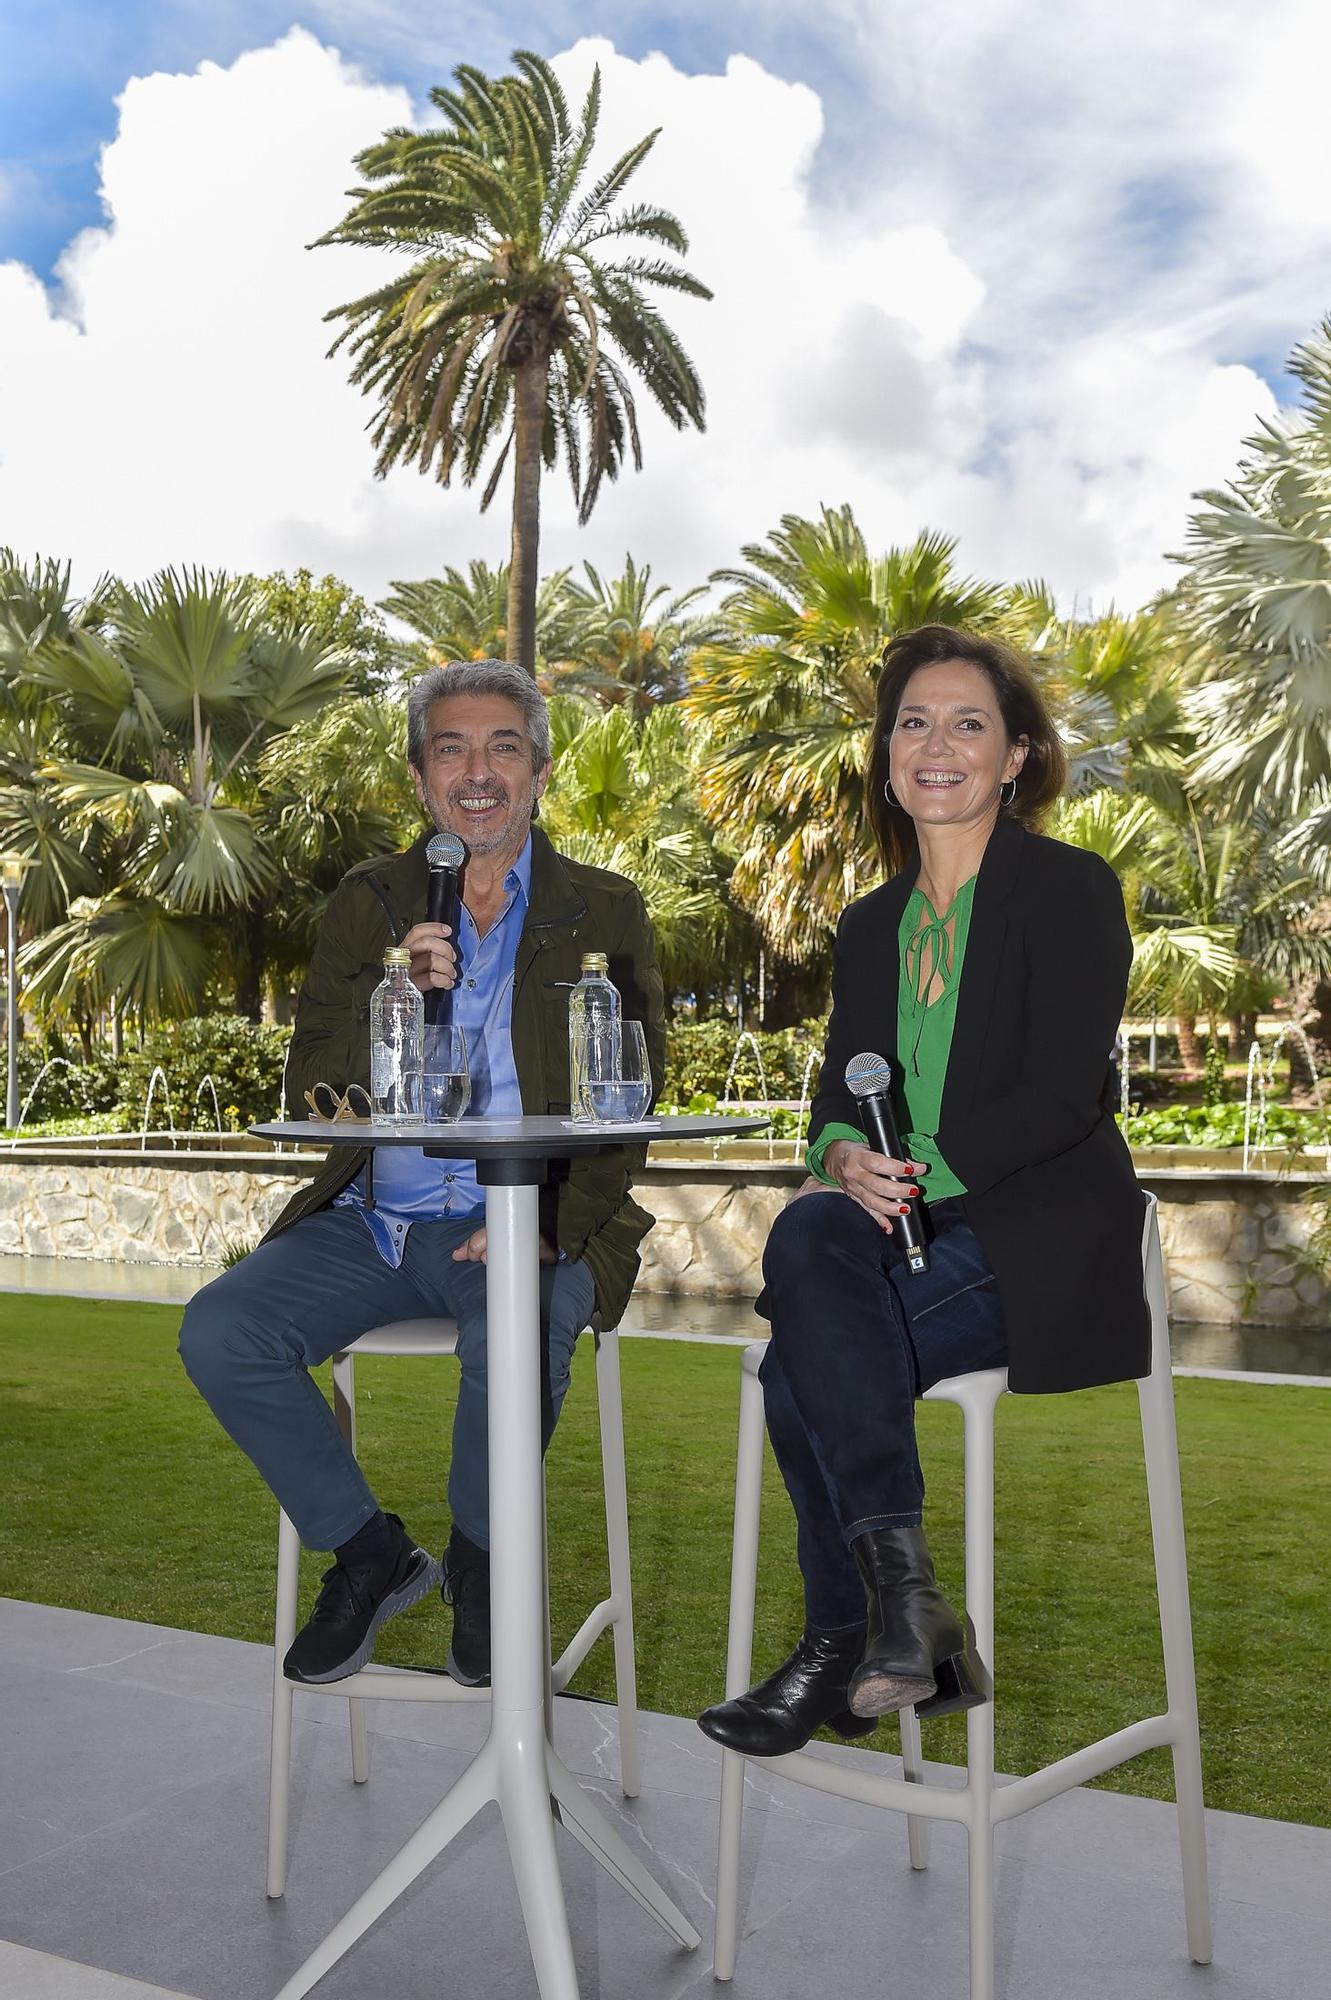 Rueda de prensa con Ricardo Darín y Andrea Pietra en el Hotel Santa Catalina